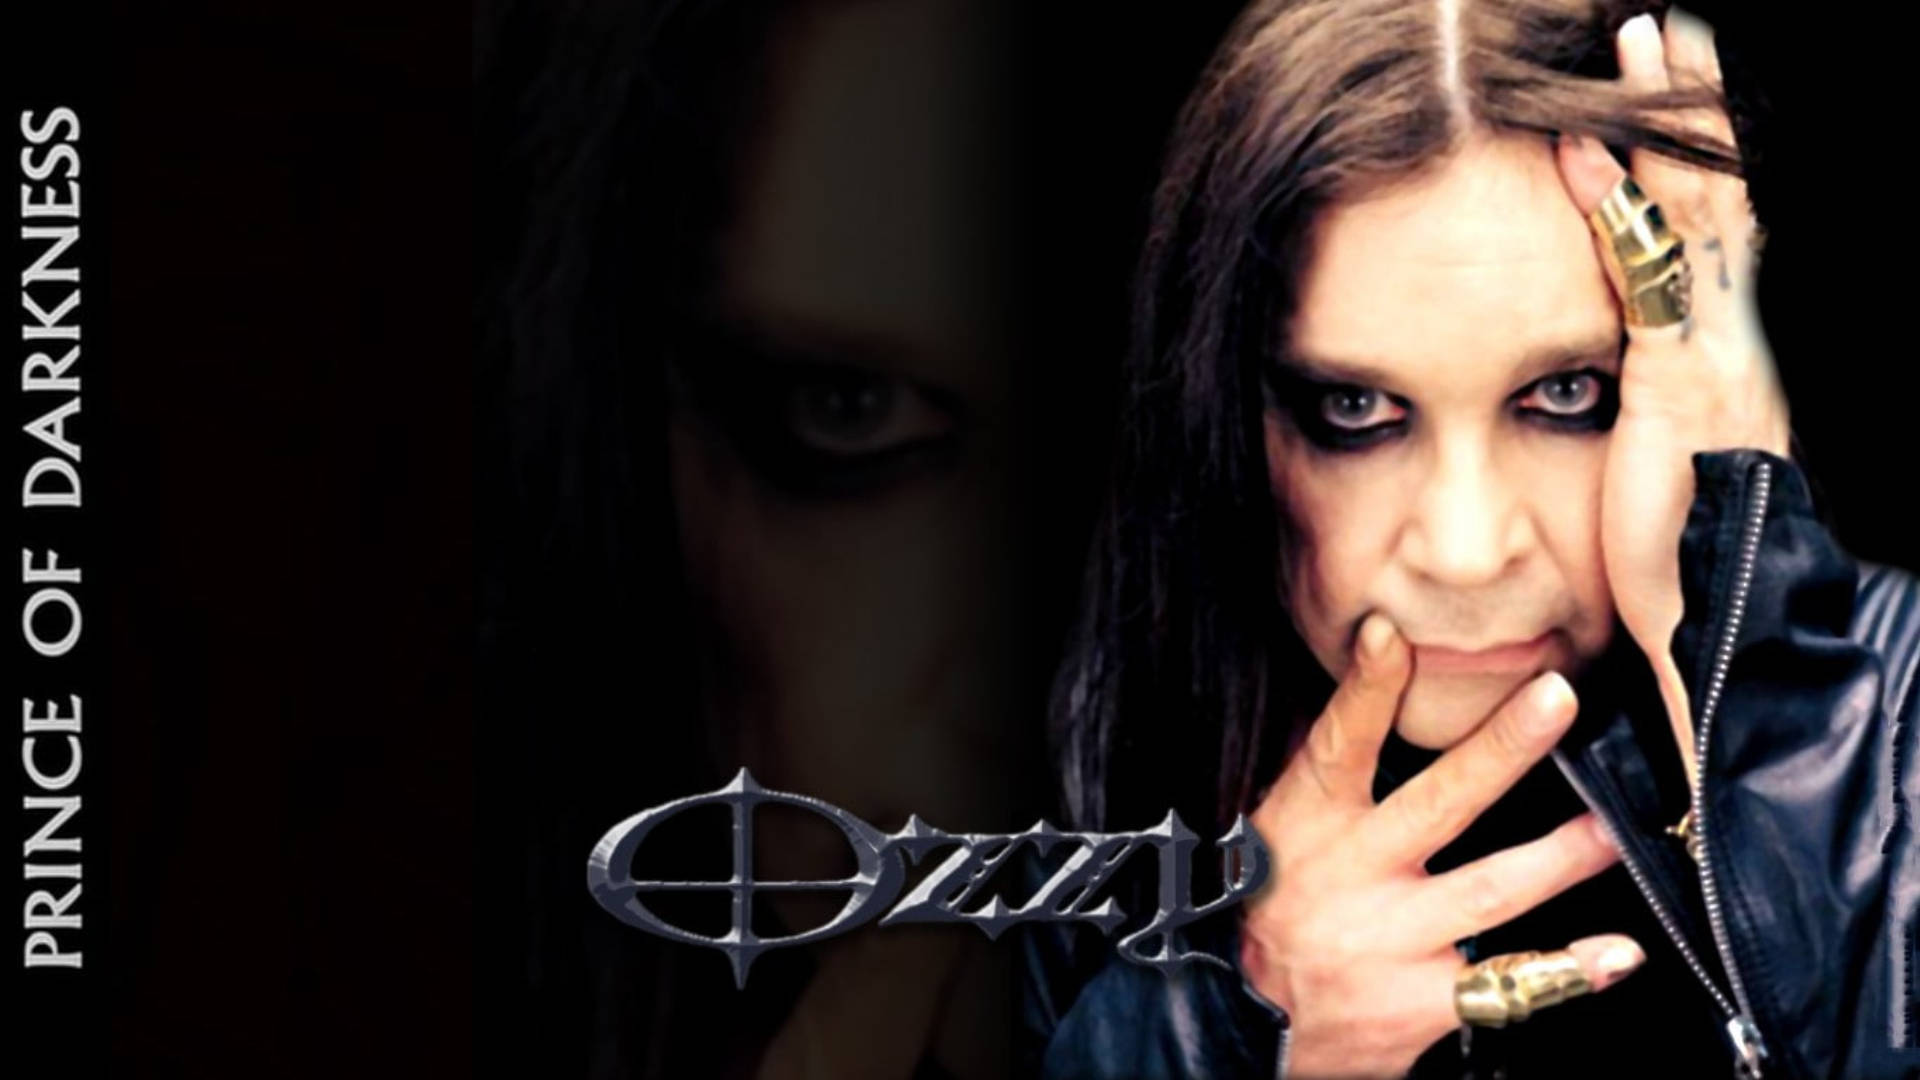 Ozzy Osbourne Prince Of Darkness Background